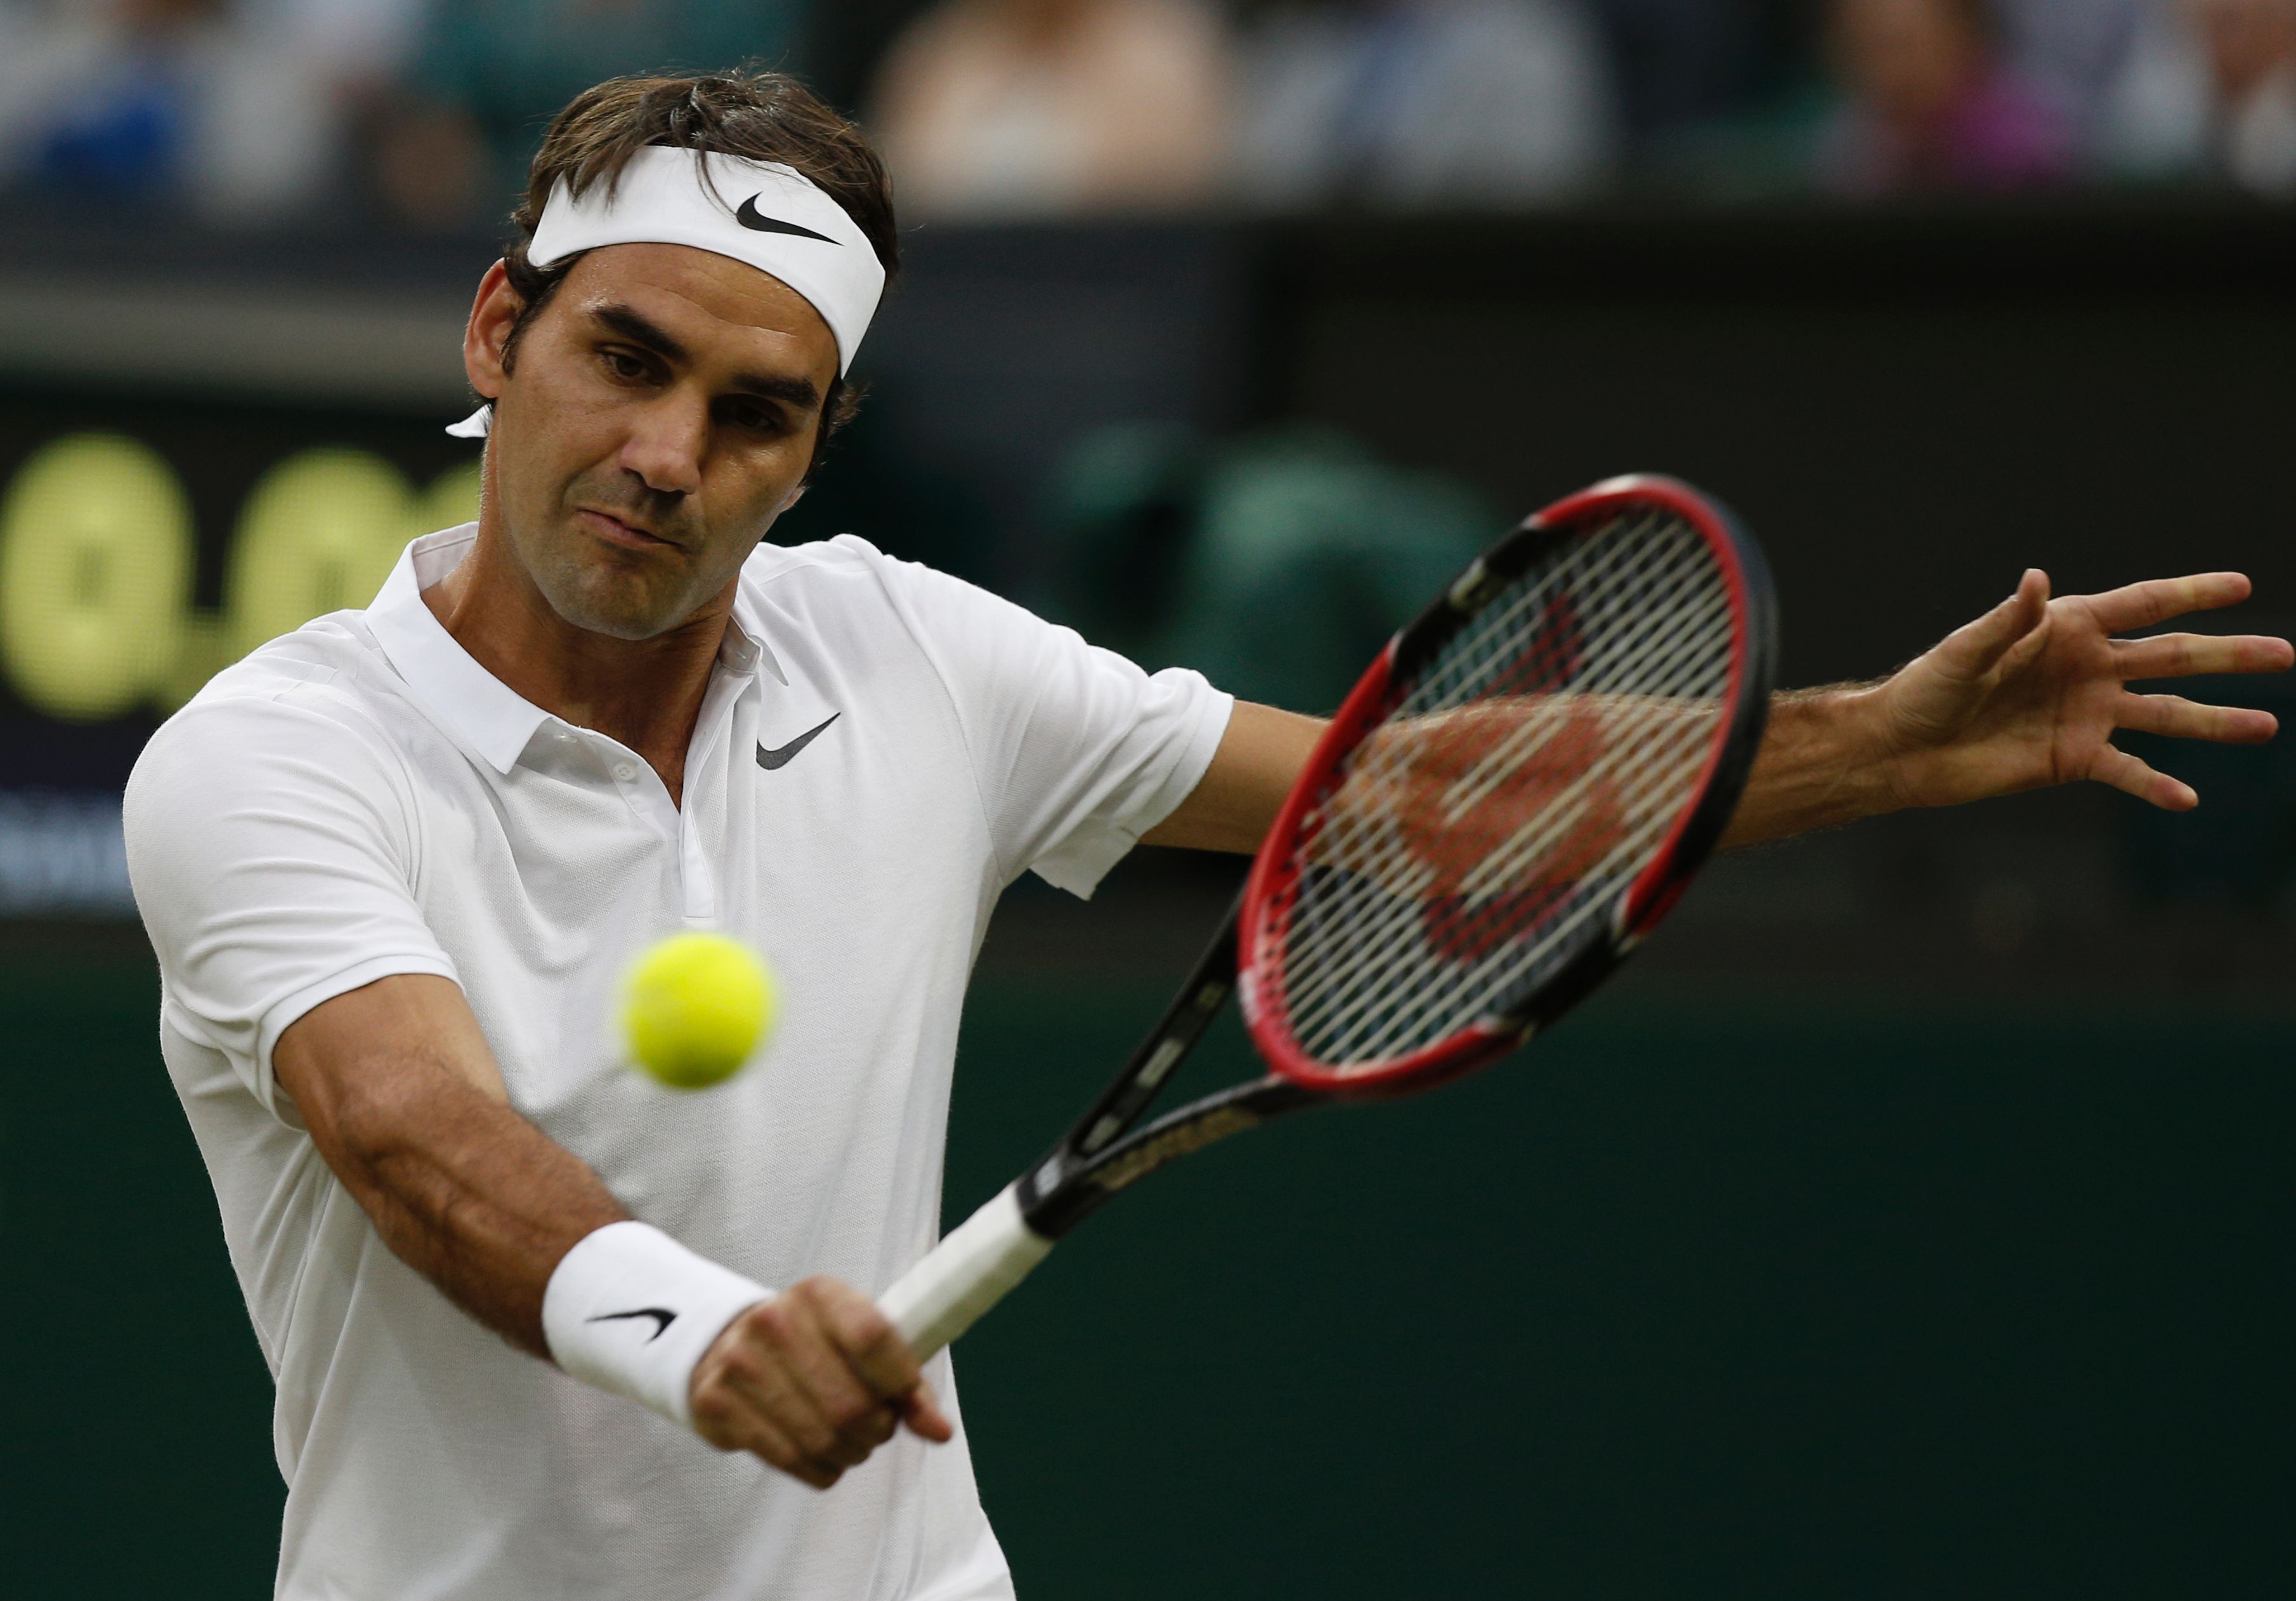 Tennis: Federer sends Evans packing